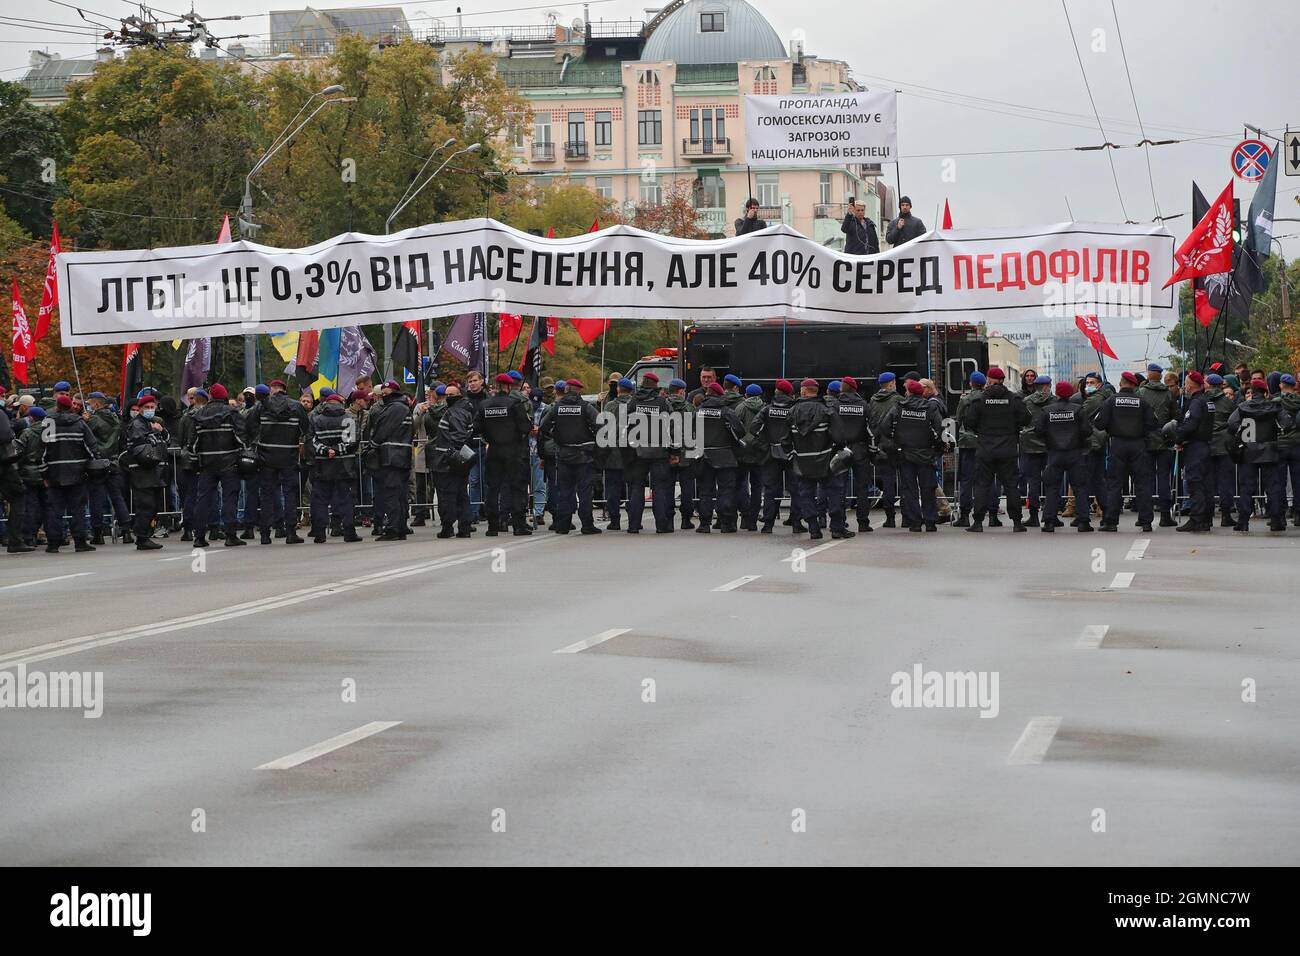 KIEW, UKRAINE - 19. SEPTEMBER 2021 - auf den Polizeilinien sind Demonstranten zu sehen, die gegen den Gleichstellungsmarsch protestieren, der zur Unterstützung der LGBTQ-Kommunikation durchgeführt wurde Stockfoto